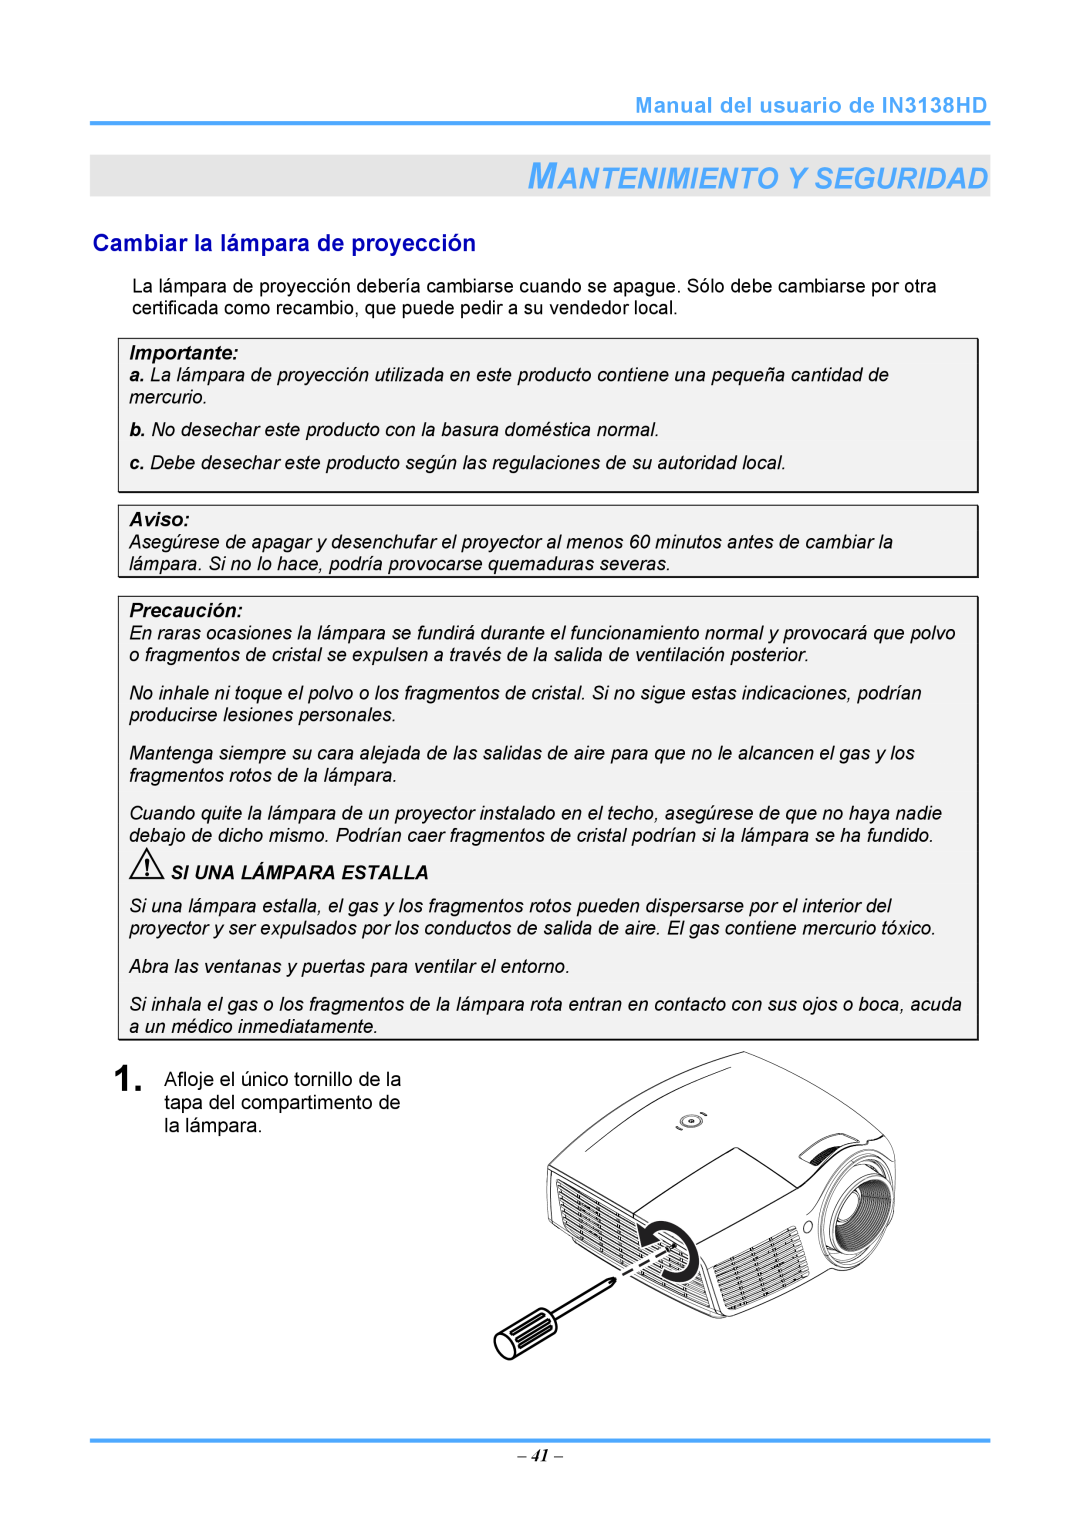 InFocus Mantenimiento Y Seguridad, Cambiar la lámpara de proyección, Manual del usuario de IN3138HD, Importante, Aviso 